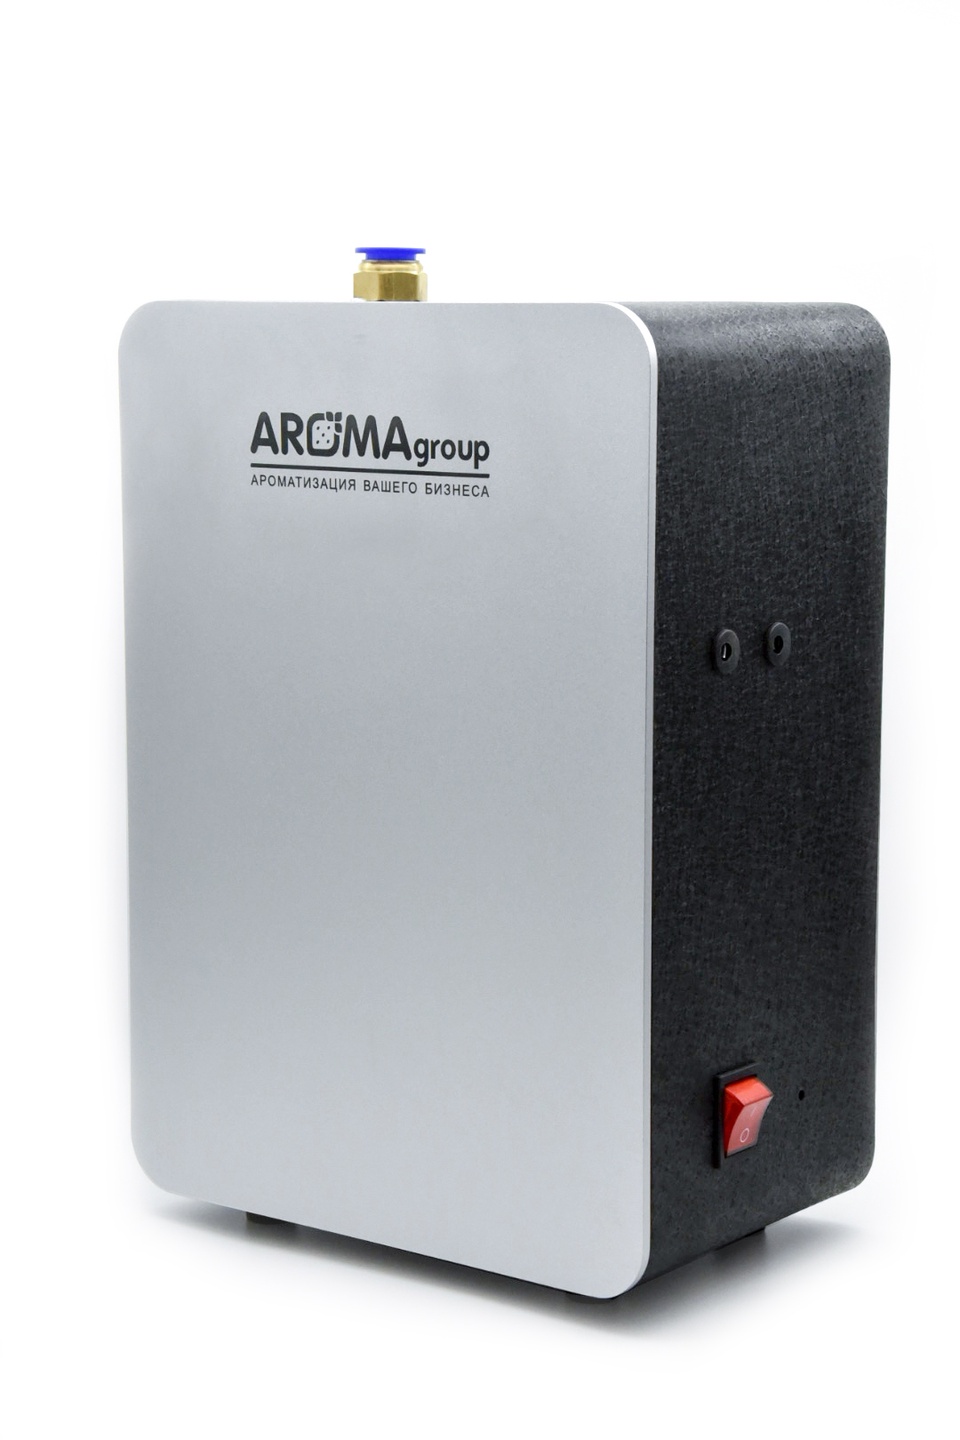 Аппарат AROMAgroup Mega 2000 - 53 010 ₽, заказать онлайн.